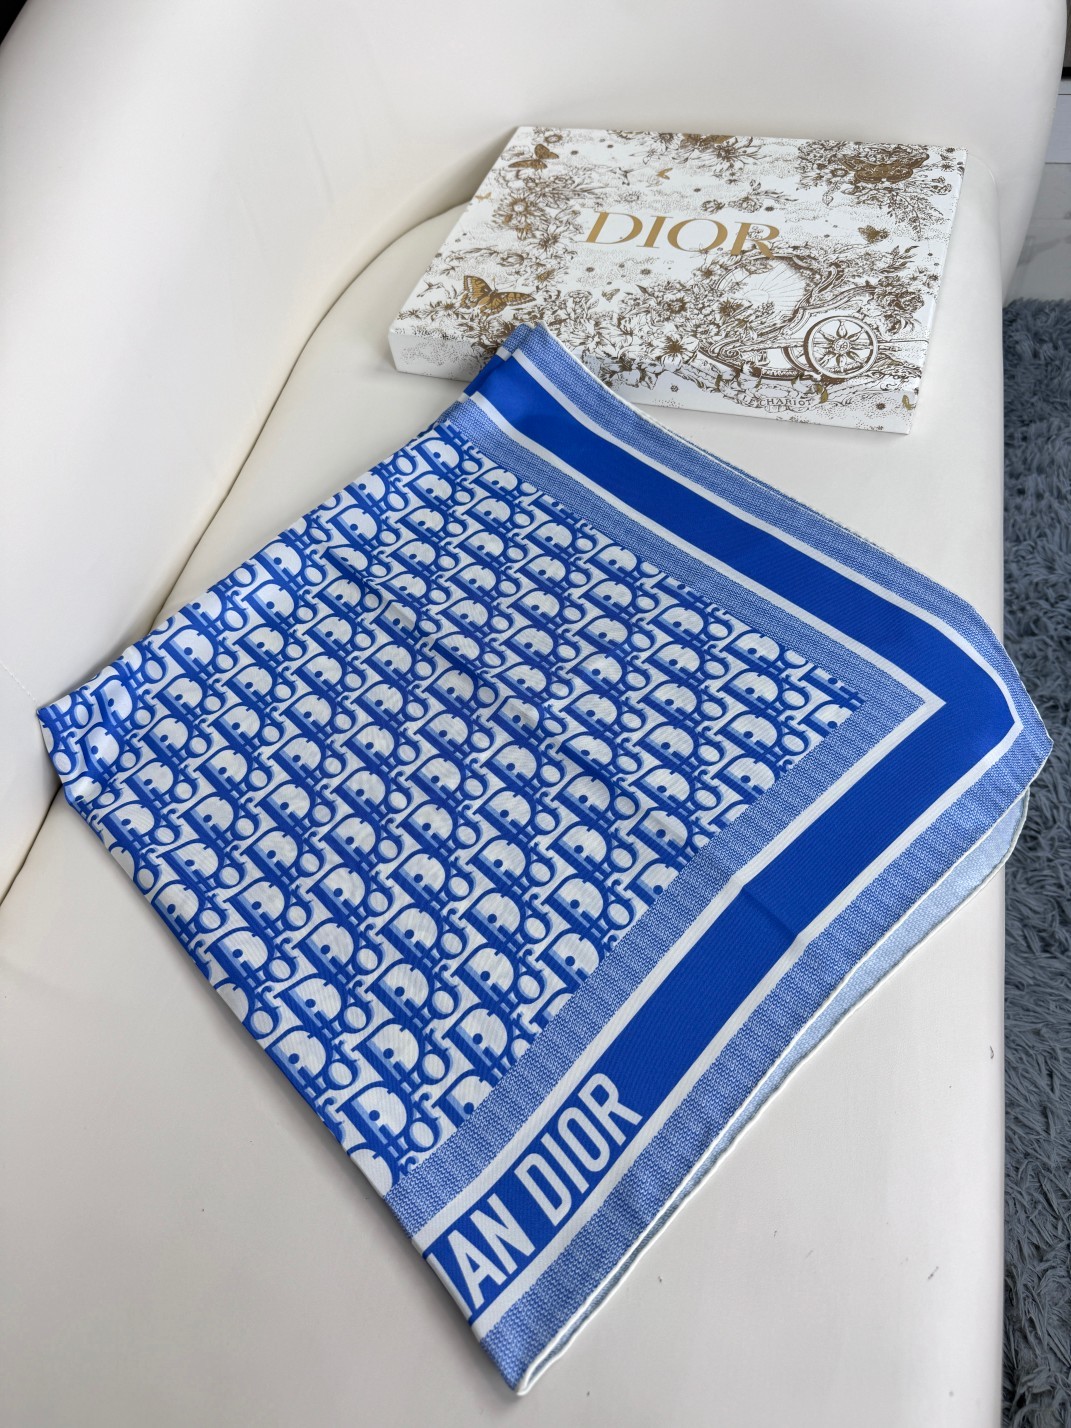 品名:流金字母面料真丝尺寸90*90颜色海军蓝灰色浅蓝这款酒红色方巾以品牌标志性的Oblique印花装饰